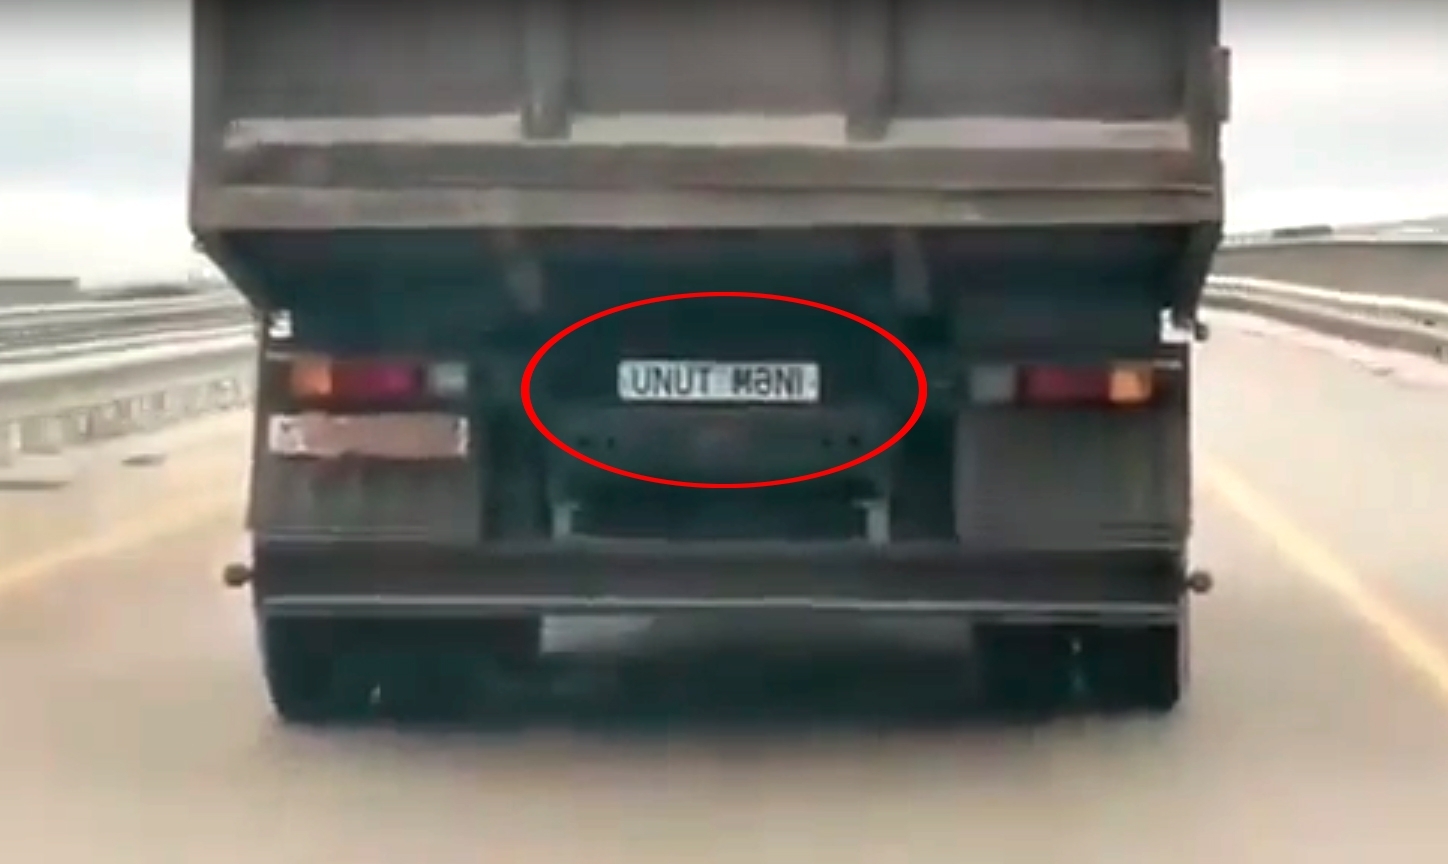 На грузовике вместо номера надпись "Забудь меня": начато расследование - ВИДЕО